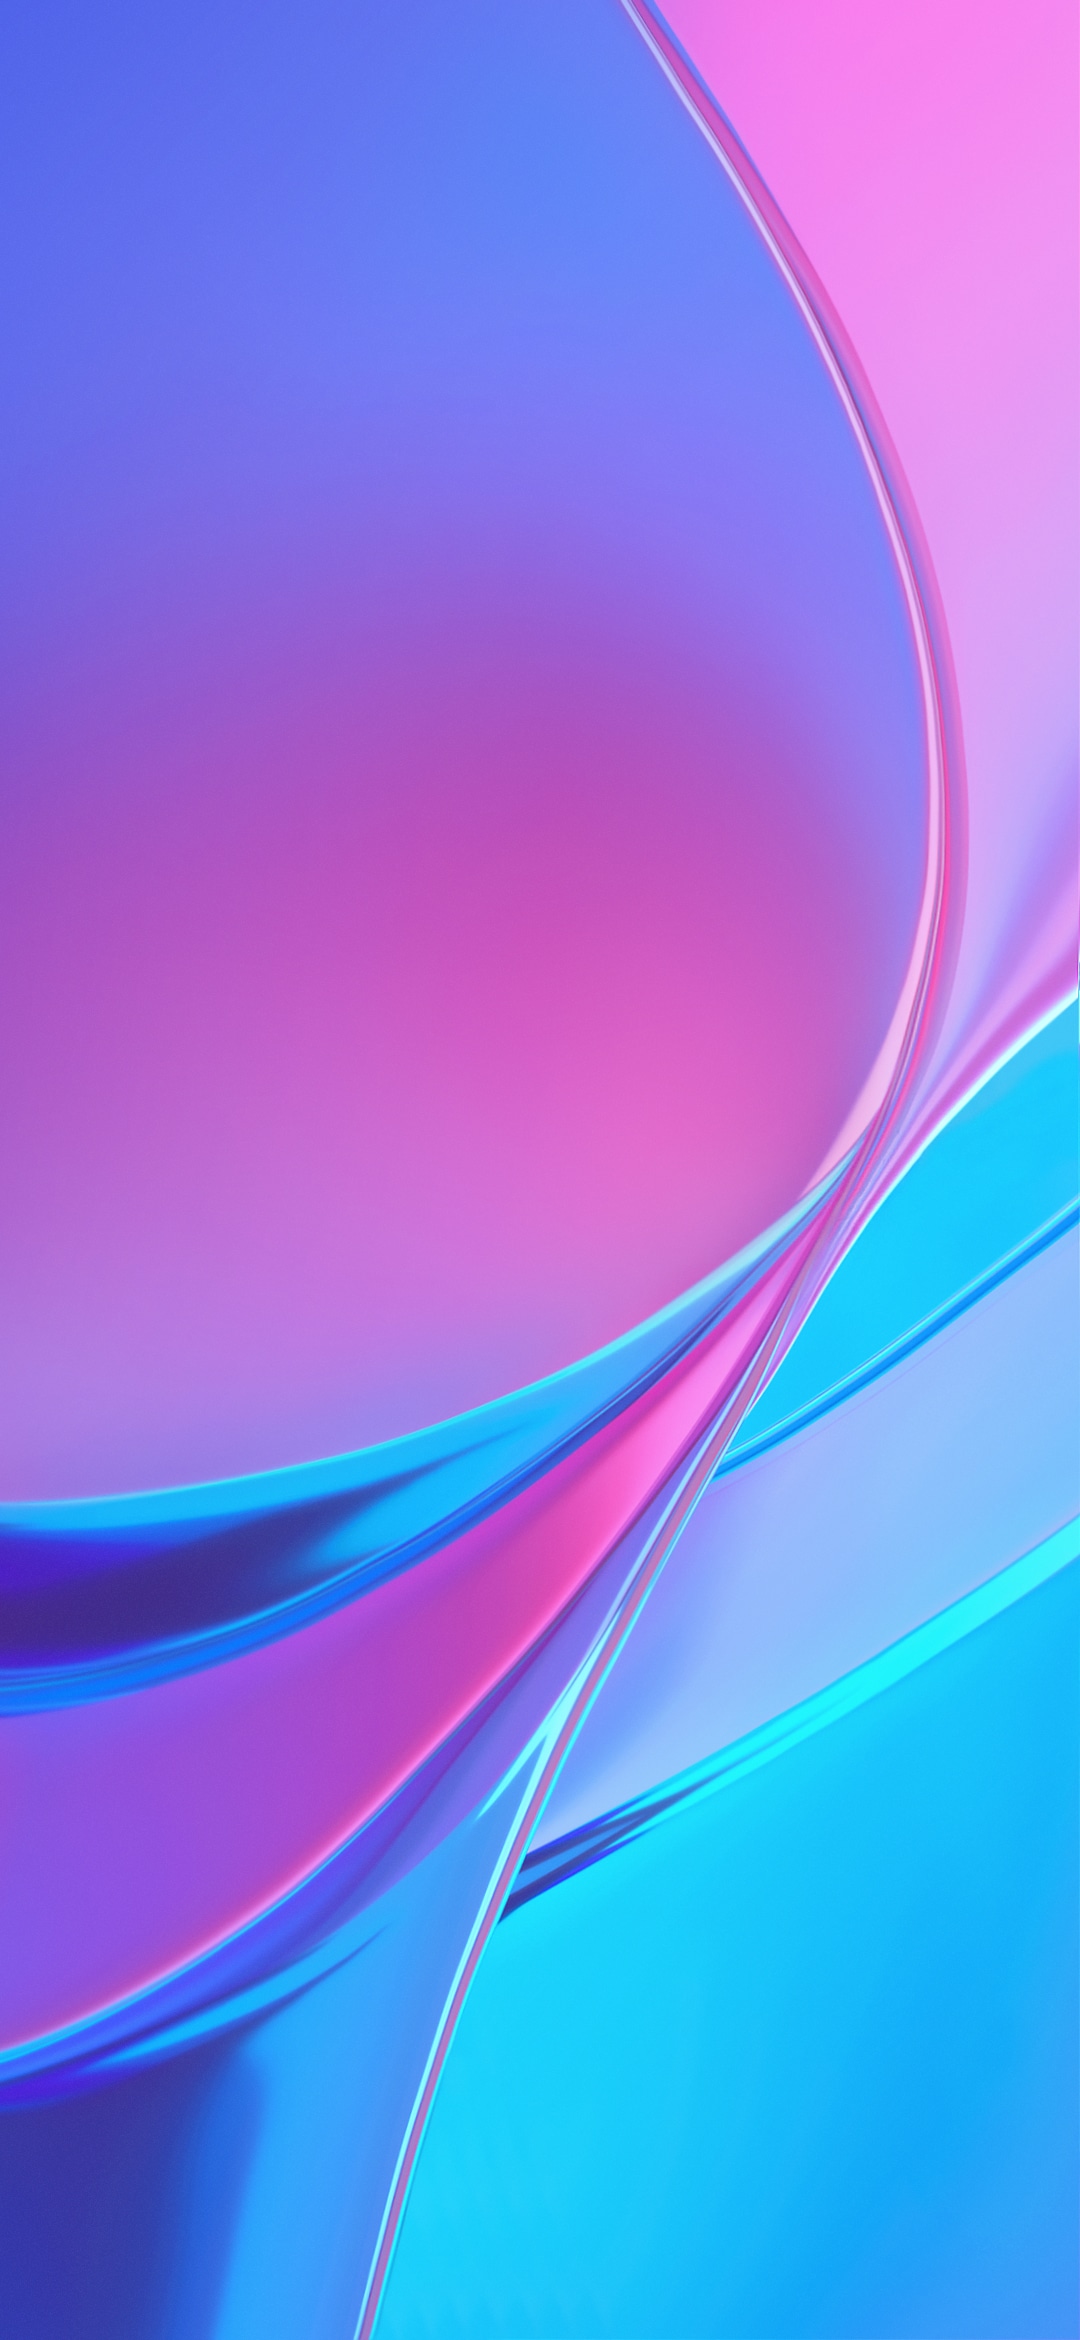 android 7.1 wallpaper,blue,violet,purple,aqua,pink